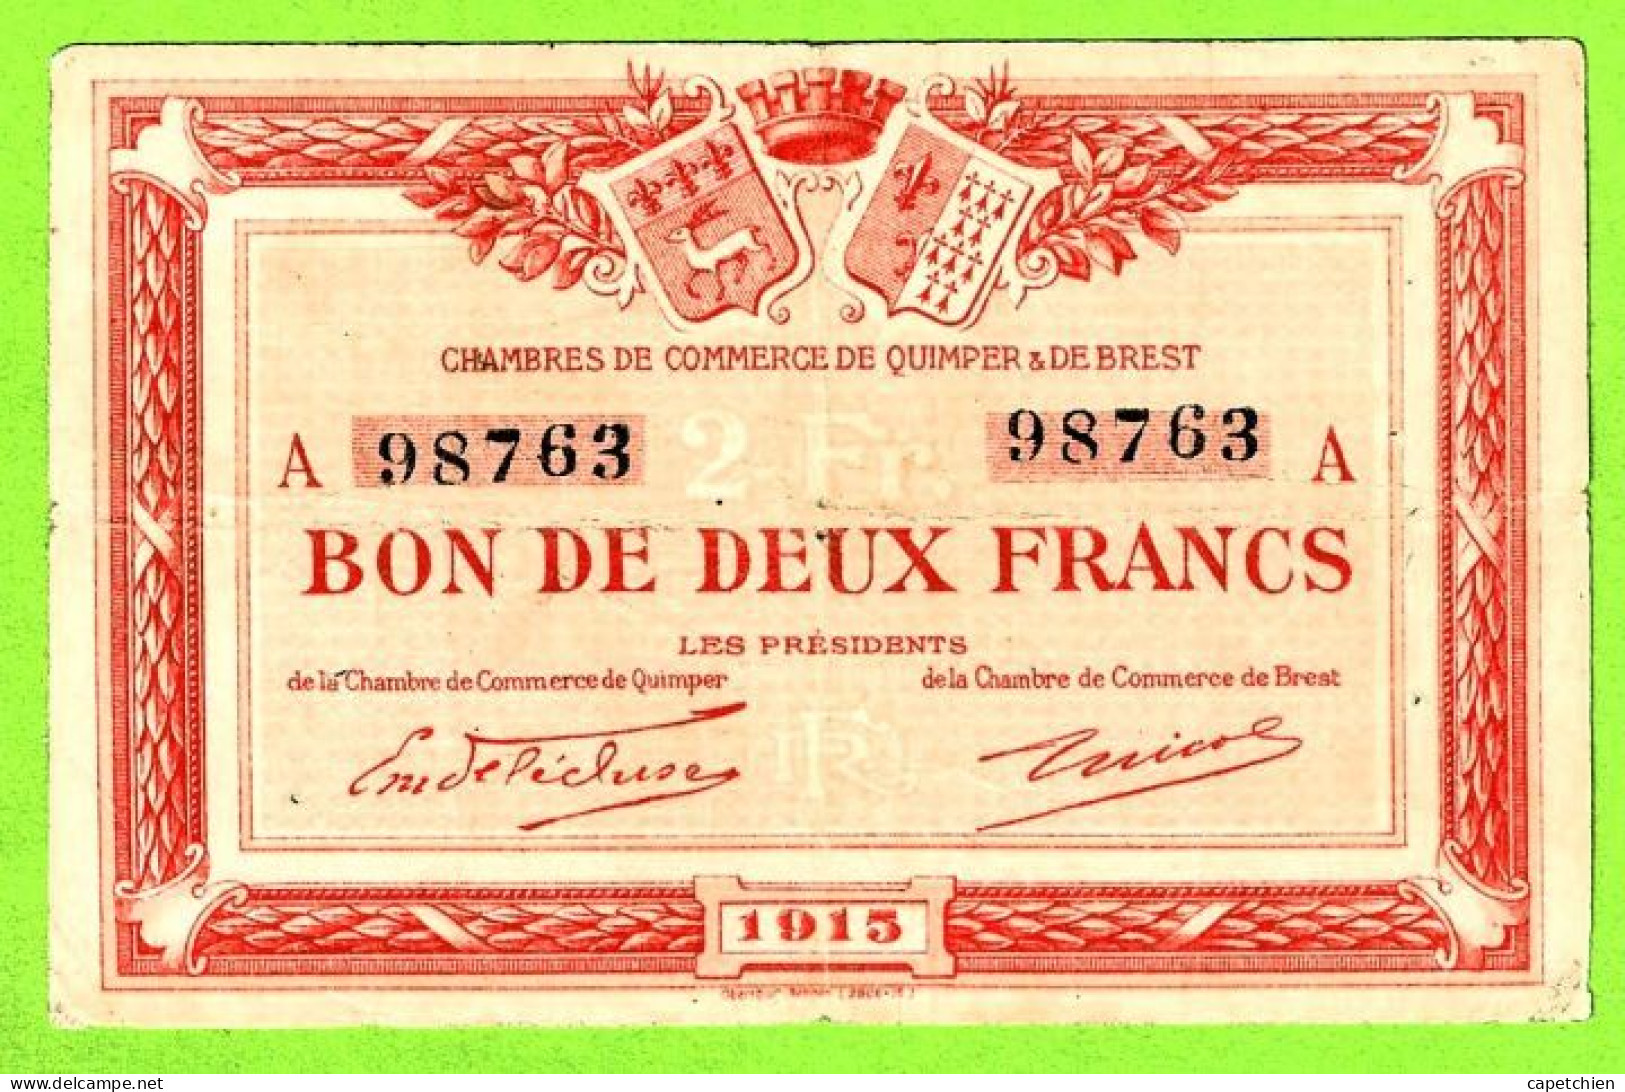 FRANCE/ CHAMBRES DE COMMERCE QUIMPER & BREST/ BON De 2 FRANCS / 1915 / 98763 :SERIE A - Handelskammer